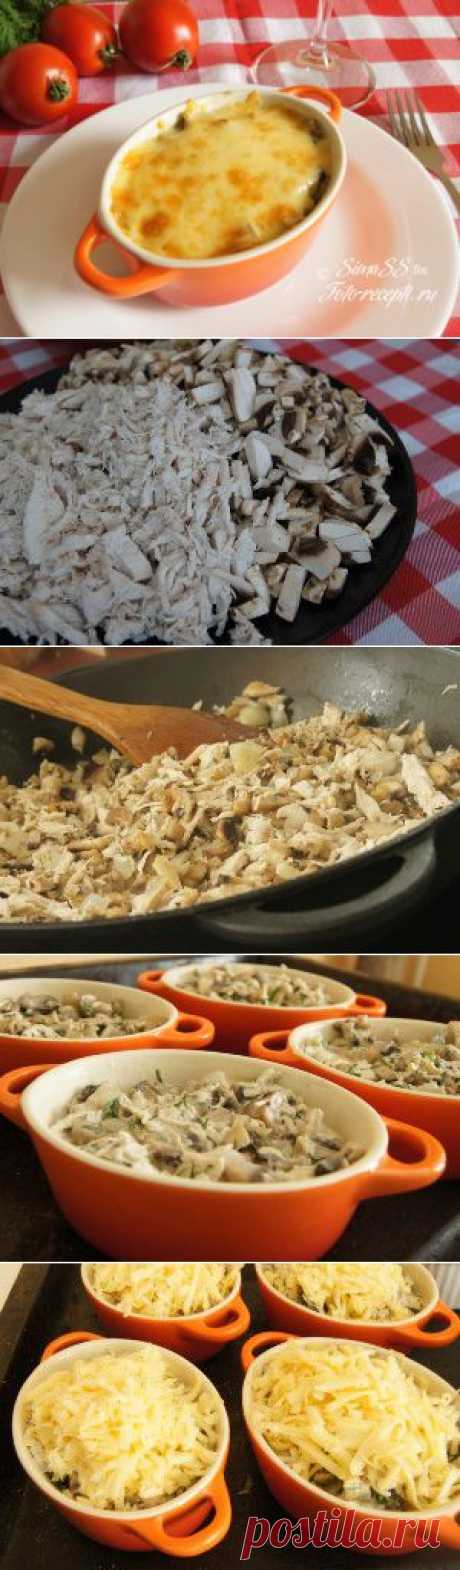 Жульен с грибами и курицей в горшочках - Рецепты с фото пошагового приготовления на Фото-Рецепты. ру